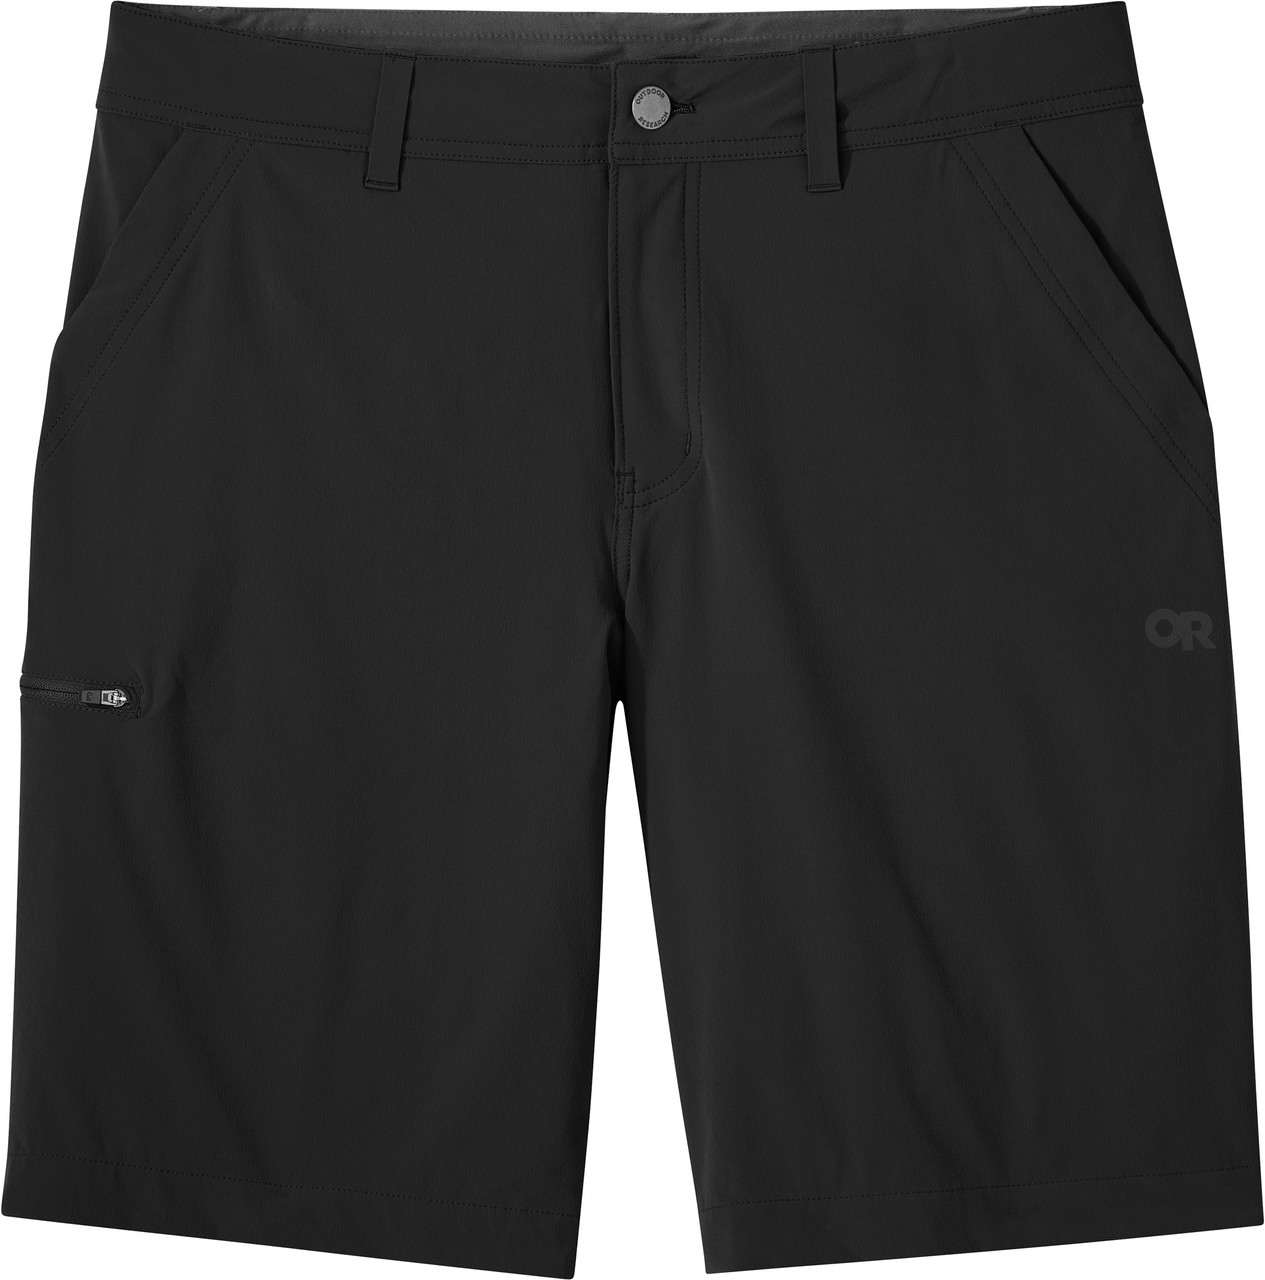 Ferrosi Shorts Black